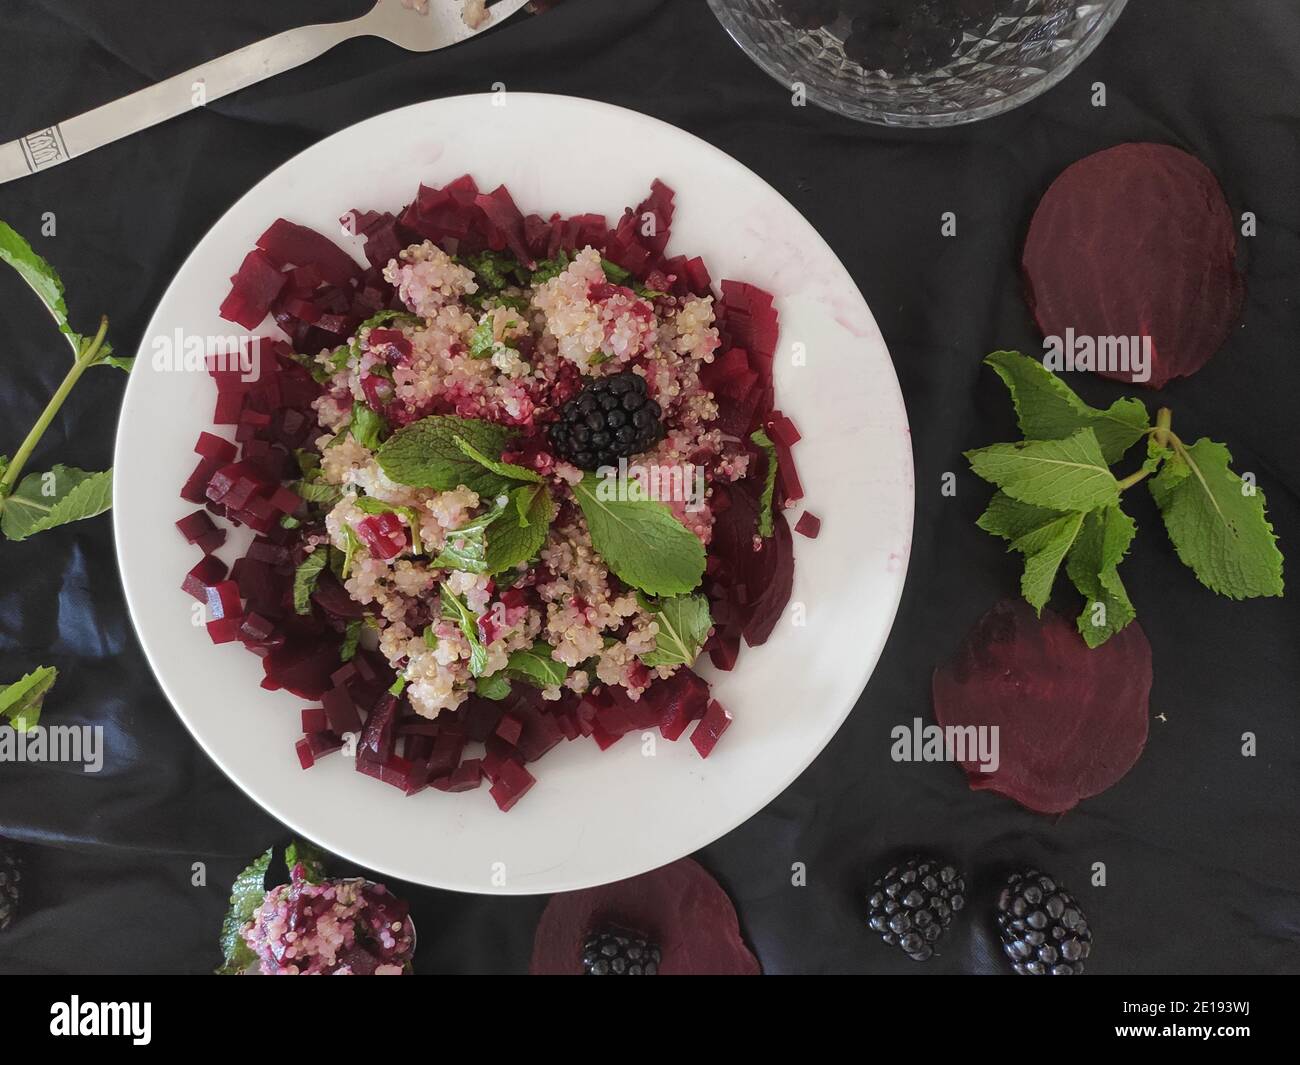 Original purple quinoa salad Stock Photo